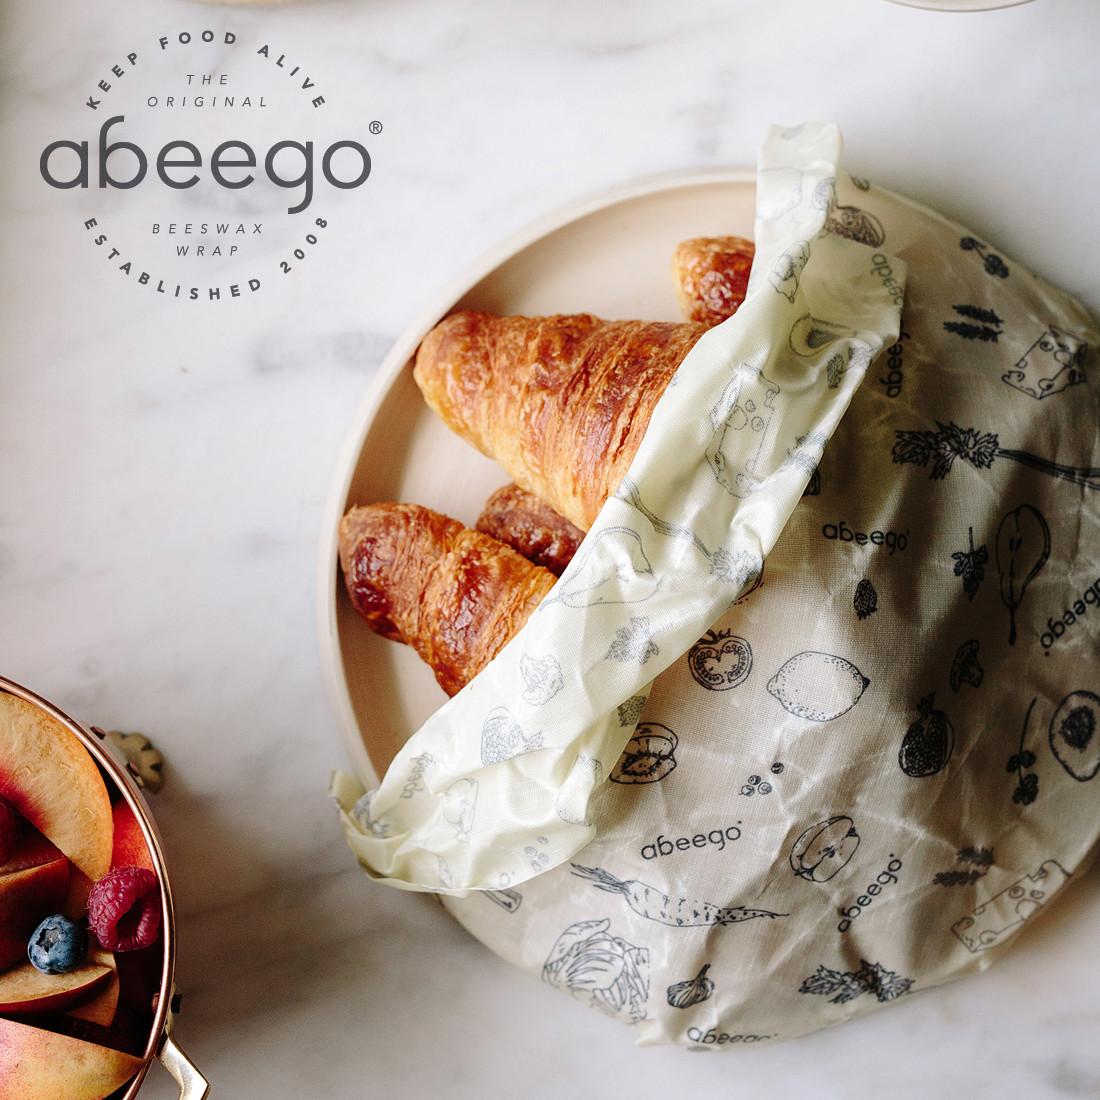 abeego アビーゴ ビーズワックスラップ 食品ラップ ミツロウラップ キッチン 食品保存 エコラップ